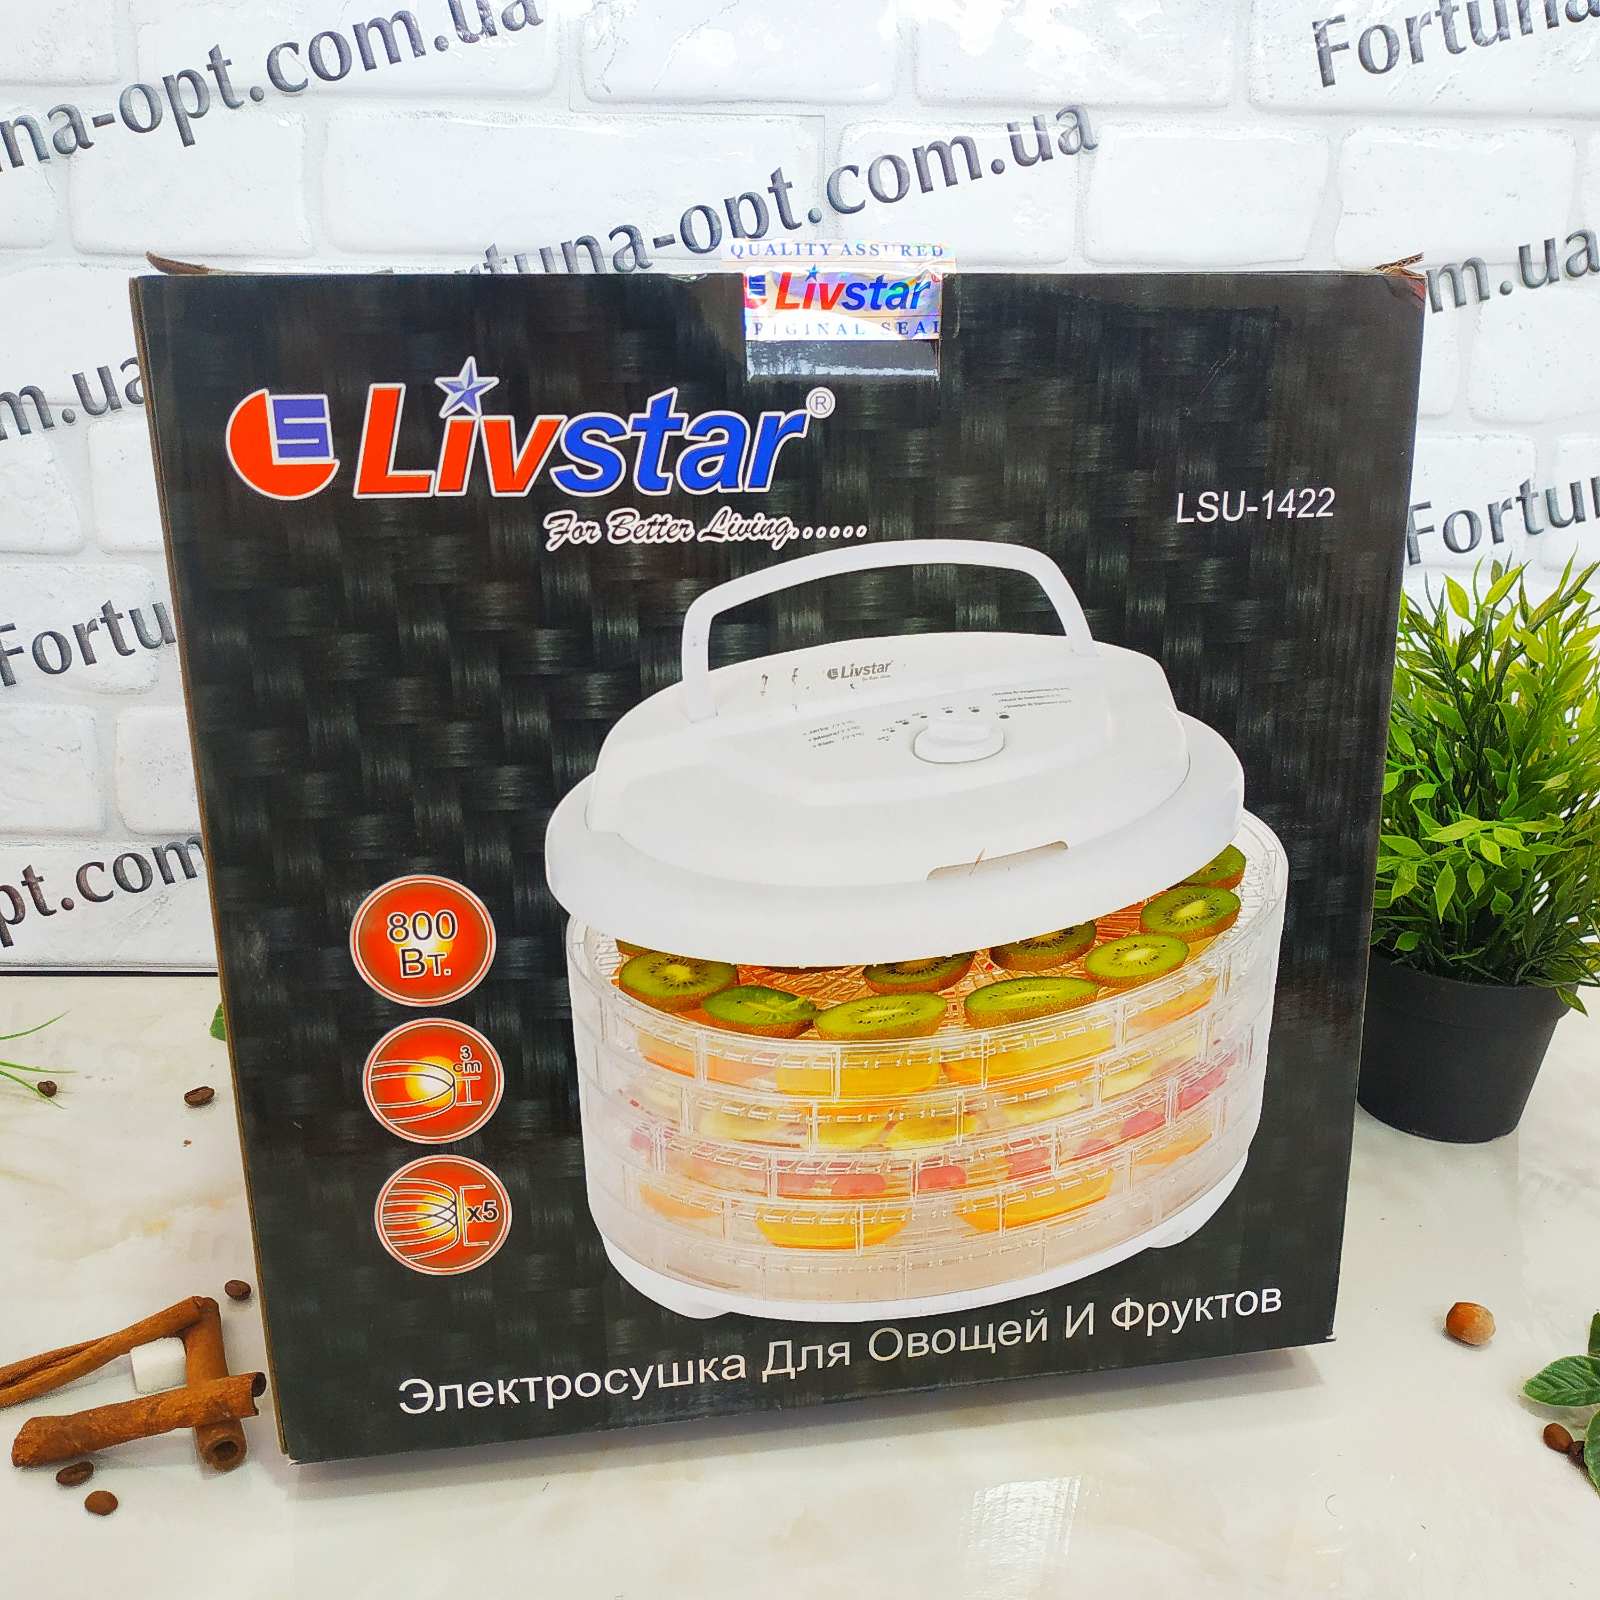 Сушилка для овощей и фруктов Livstar LSU - 1422 ✅ базовая цена $41.49 ✔ Опт ✔ Скидки ✔ Заходите! - Интернет-магазин ✅ Фортуна-опт ✅